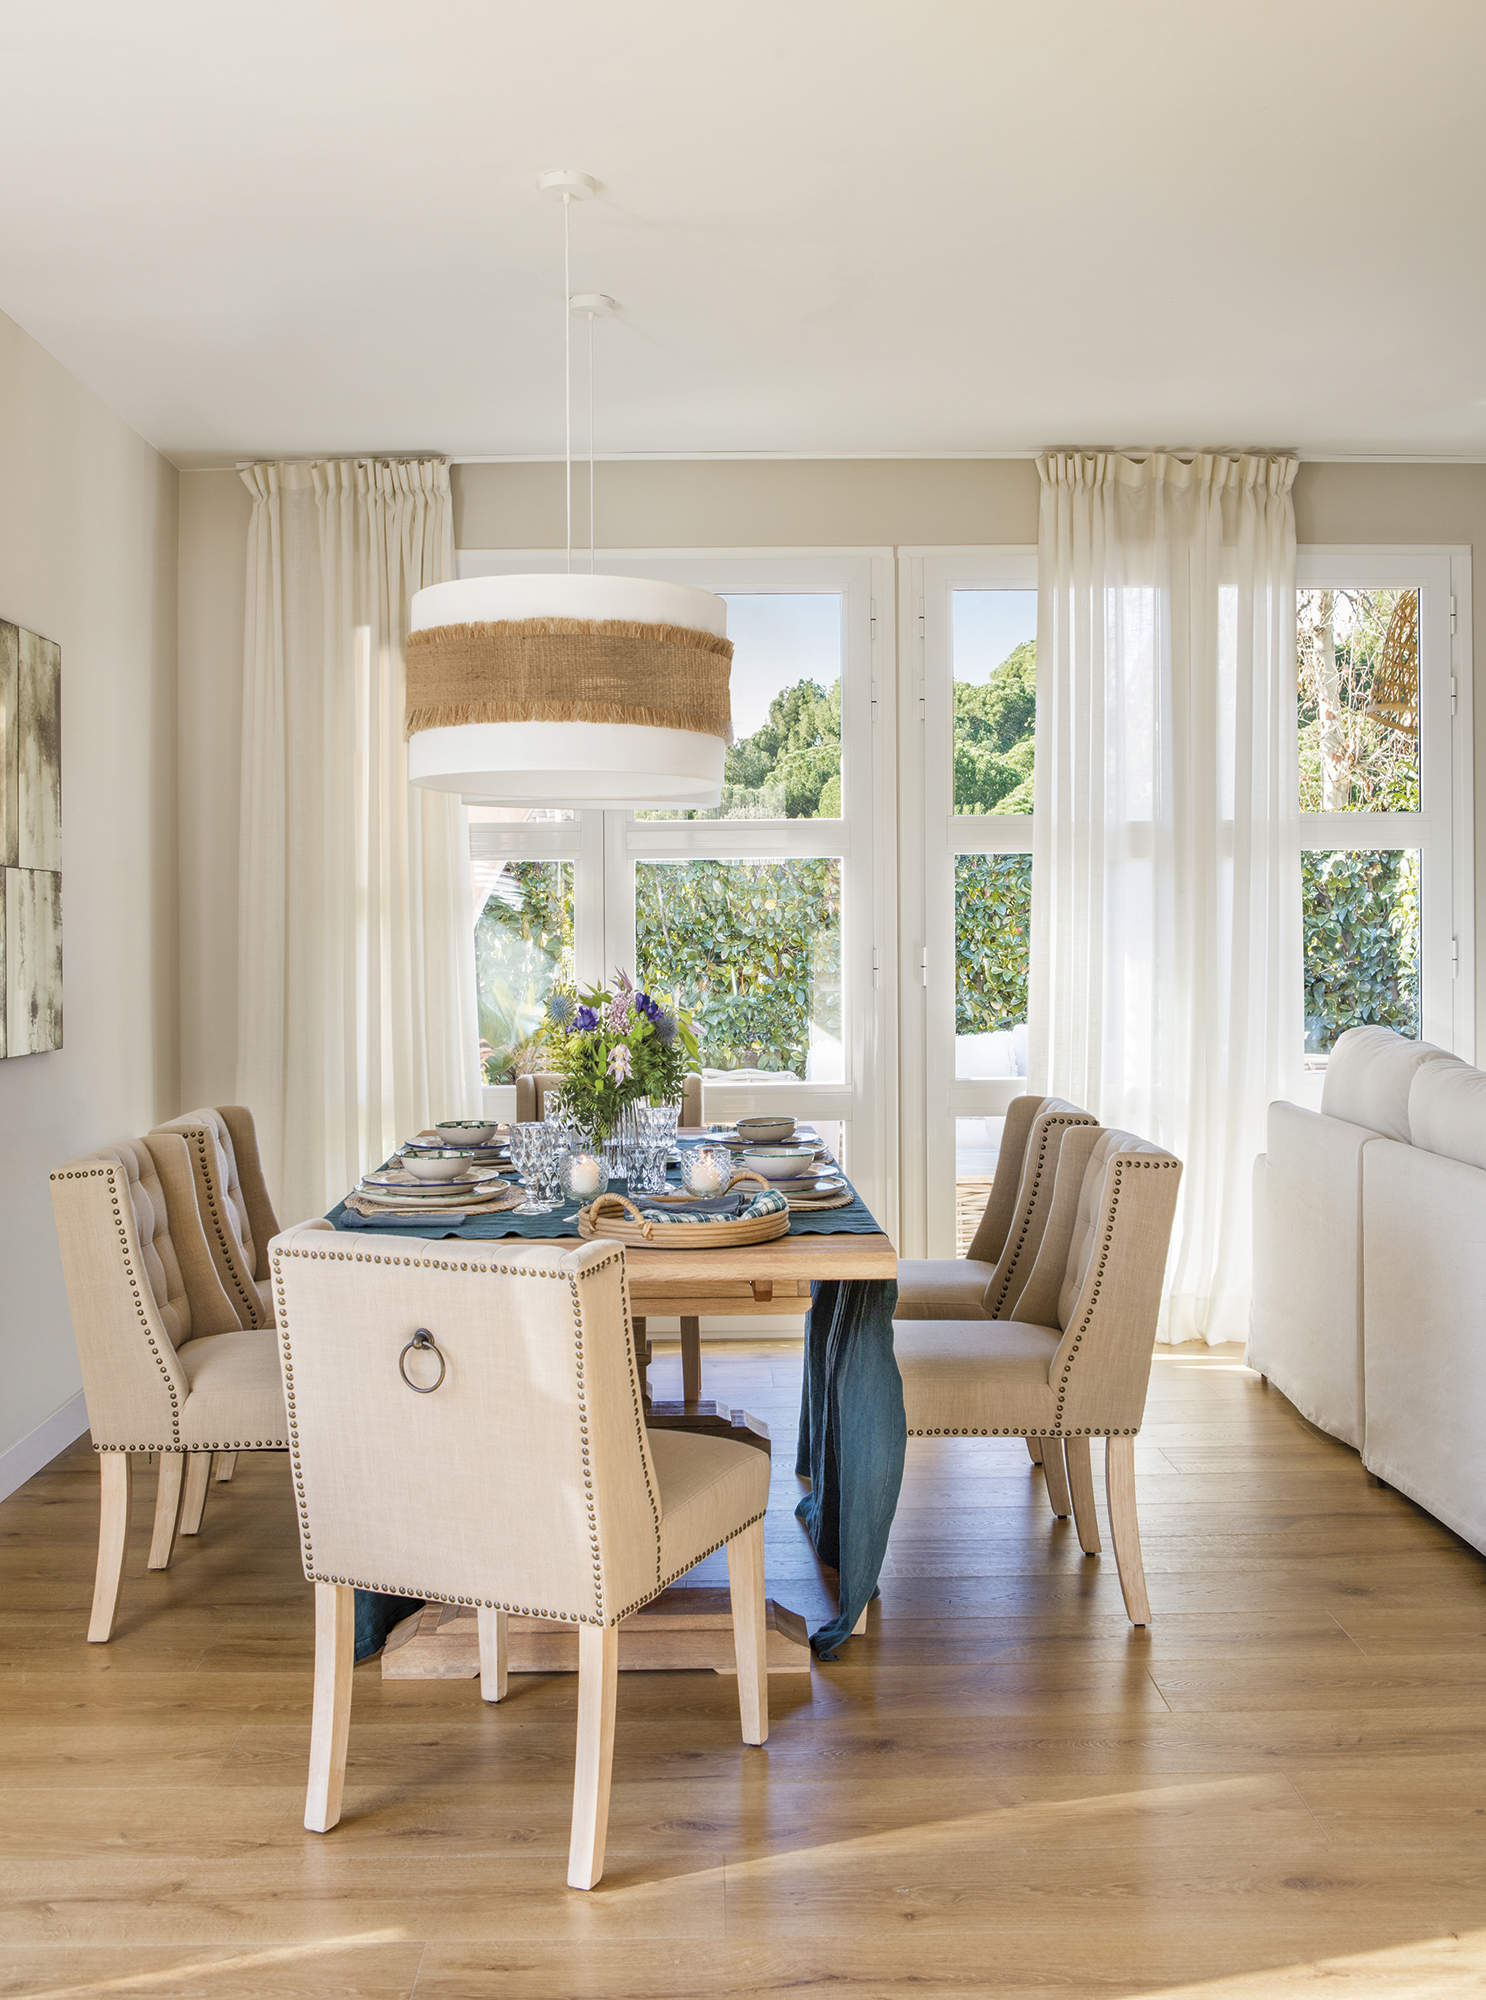 Comedor con mesa rectangular y sillas tapizadas beige, lámpara de techo, salida al jardín con cortinas blancas.